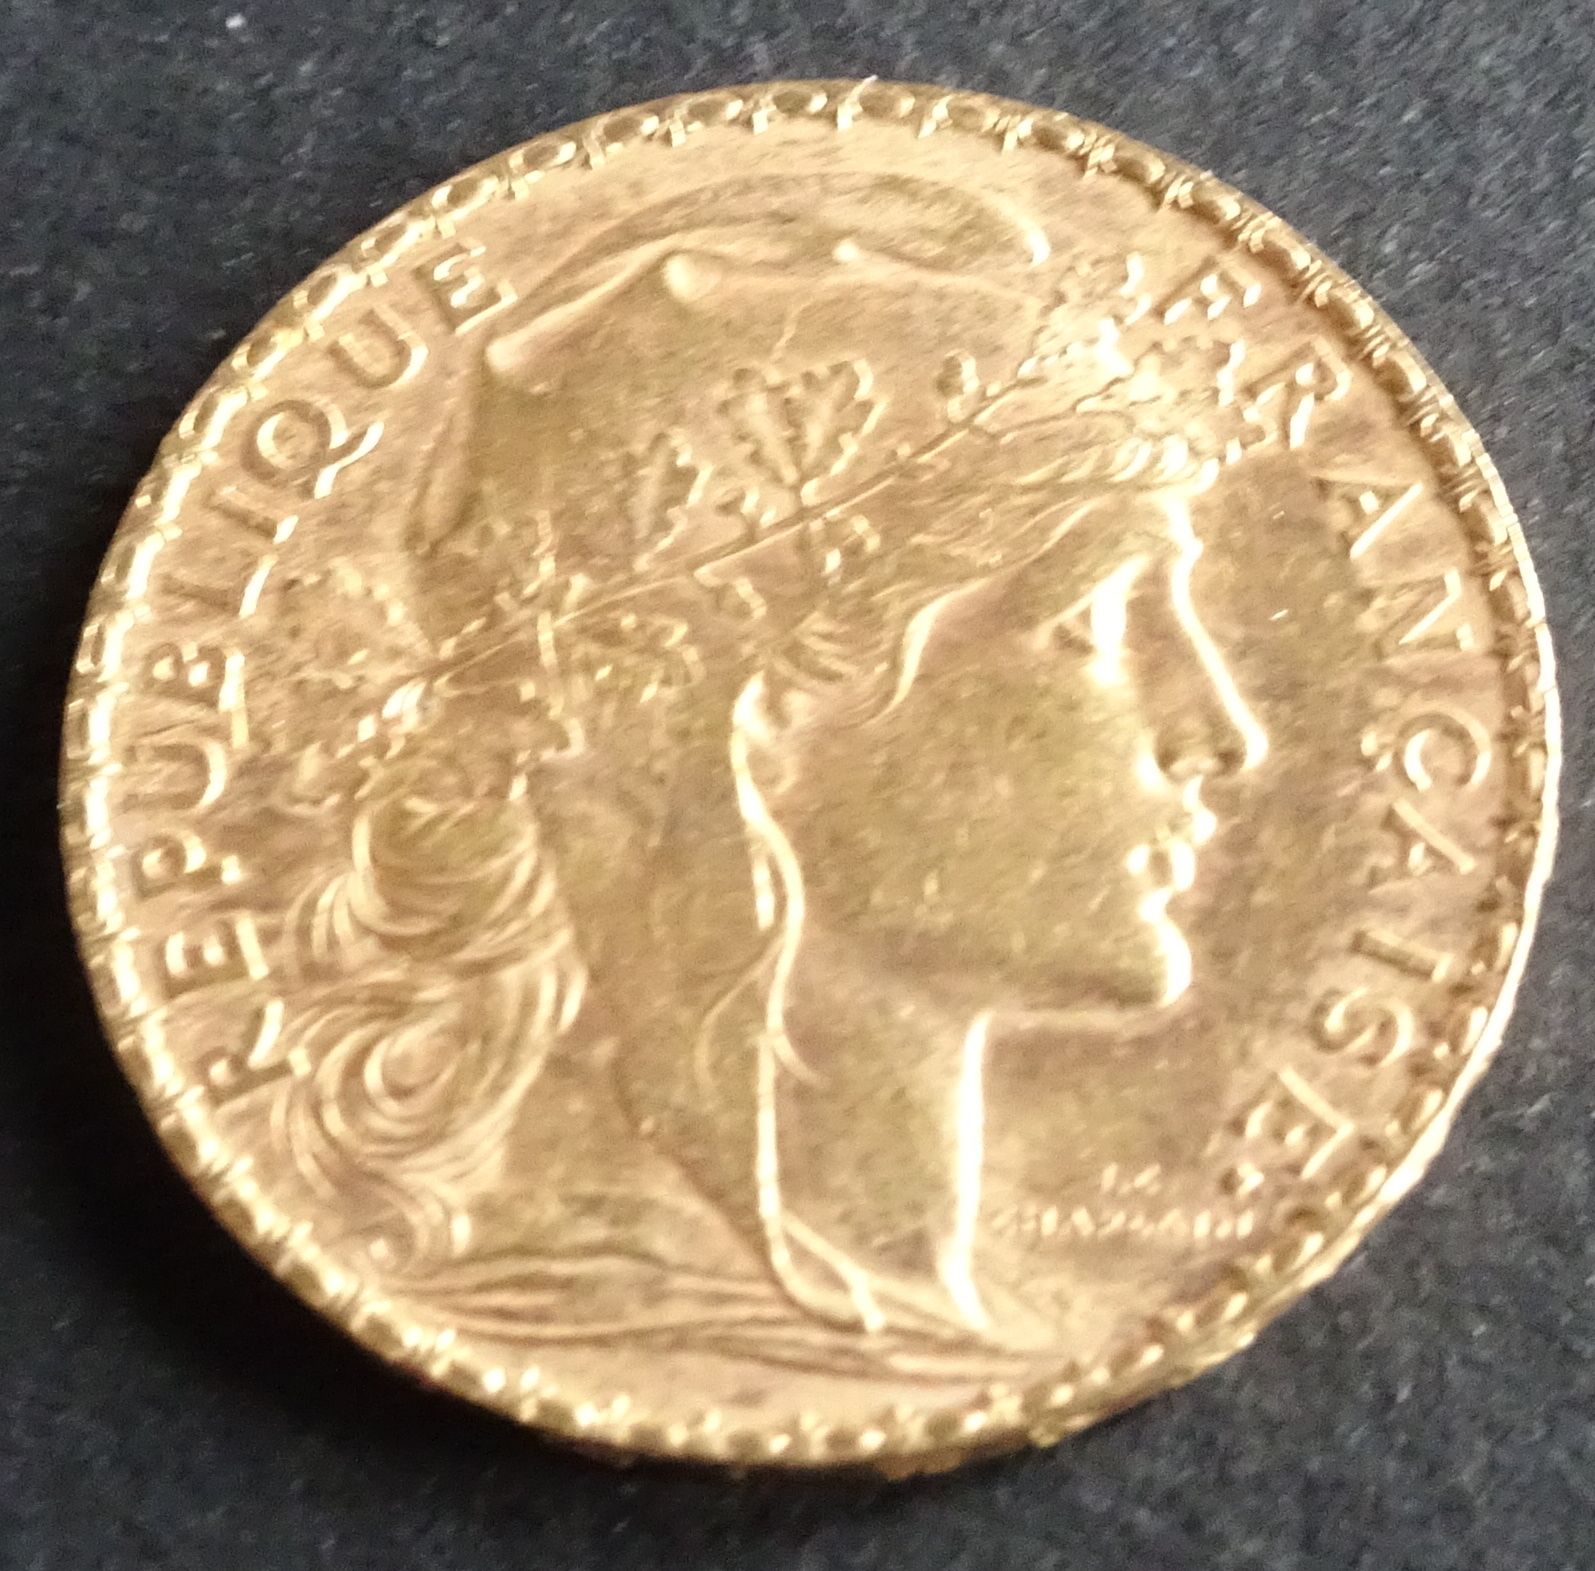 Null 金币。20法郎的公鸡金币，1903年。
重量：6.47克。